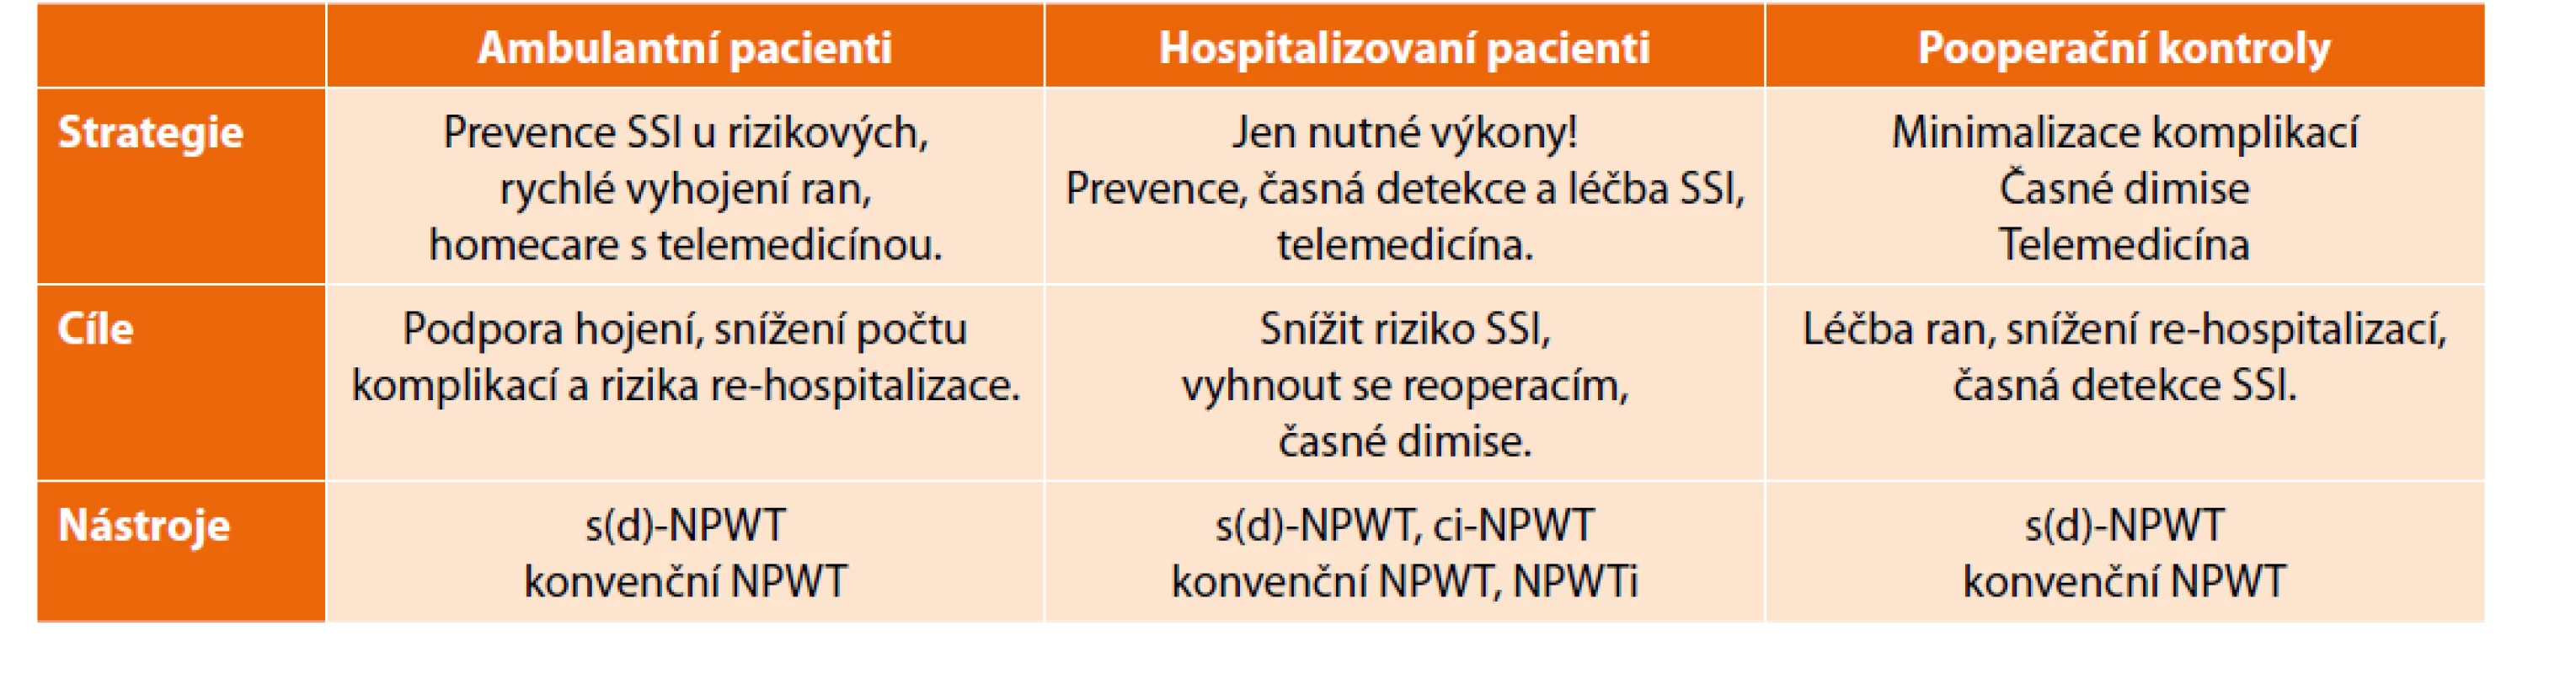 Organizační návrh využití NPWT během pandemie covid-19.<br>
Tab. 4: Proposal for organisation of care using NPWT during the COVID pandemic